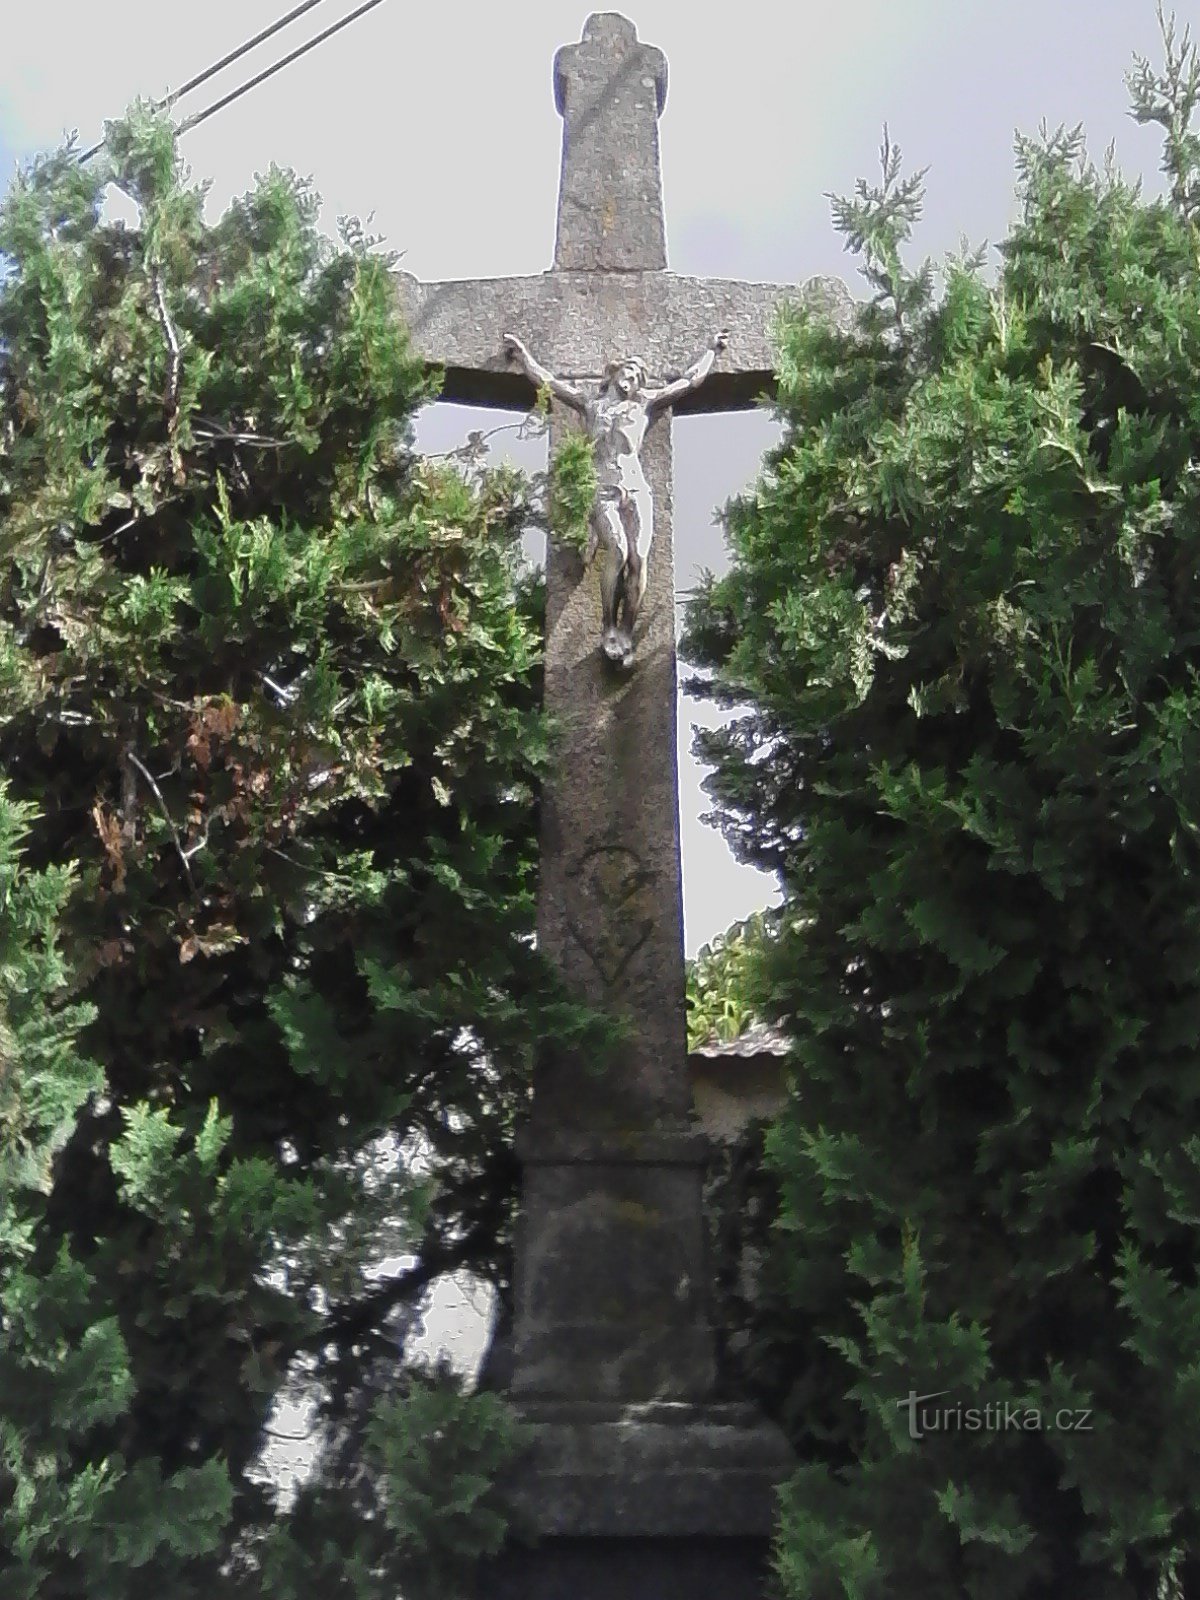 1. Λαξευμένος πέτρινος σταυρός με δισκοπότηρο του 1856 στο Nechvalice.